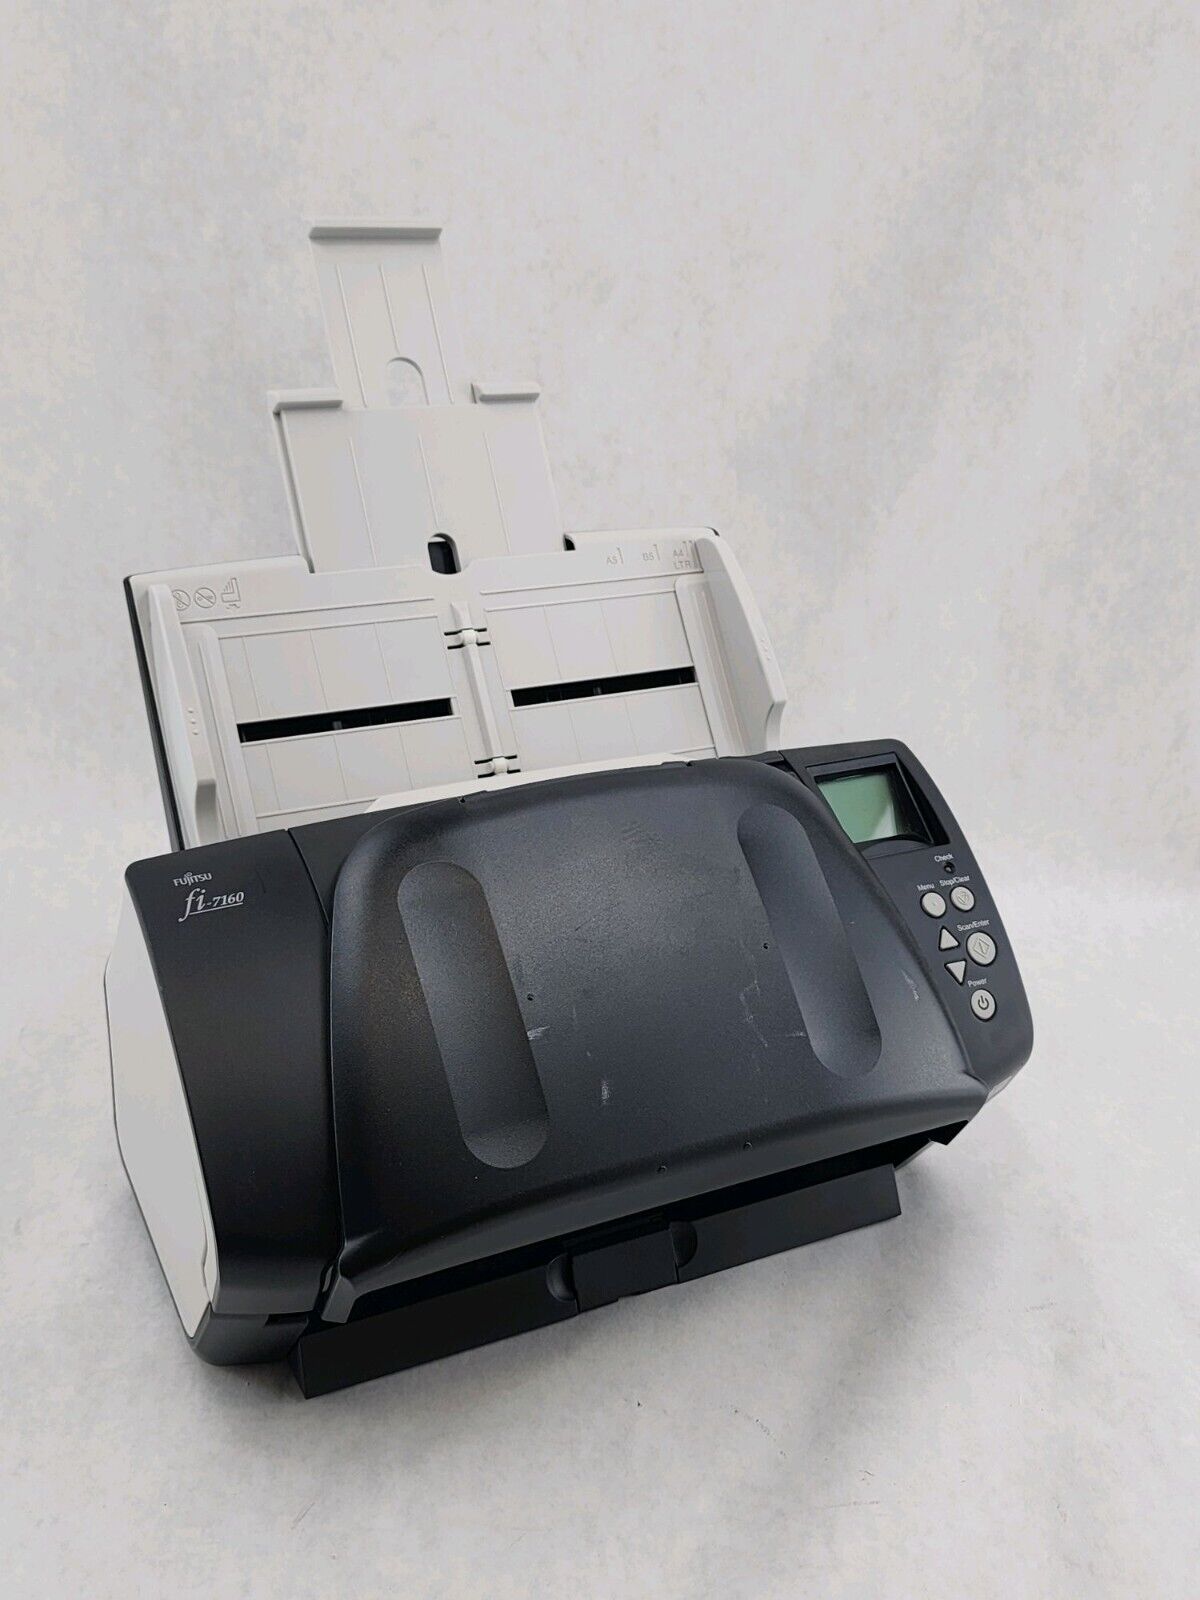 Fujitsu fi-7160 Duplex Color Desktop Scanner